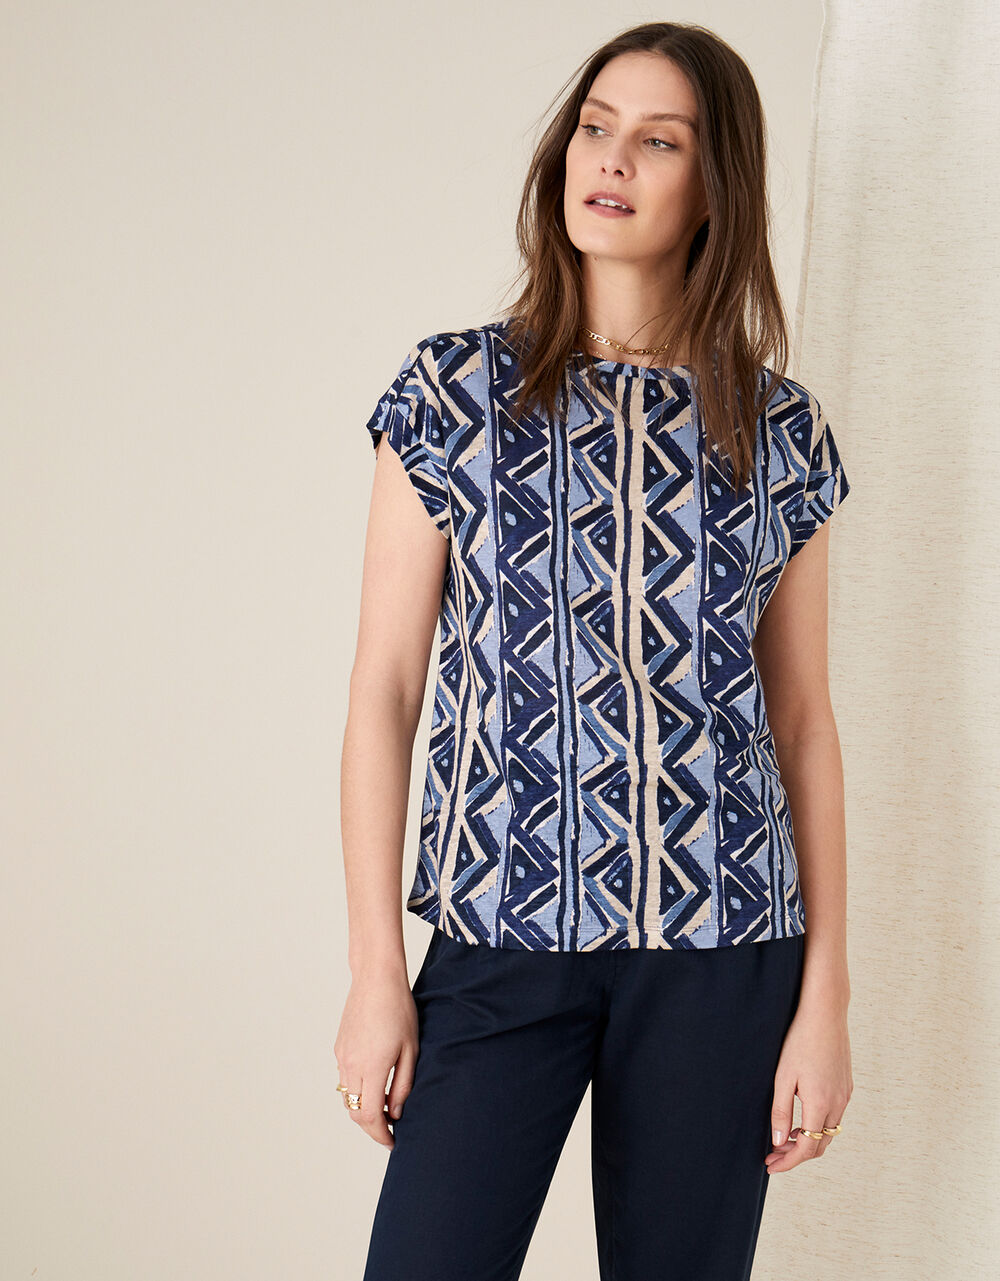 Women Women's Clothing | Berta Printed Top in Pure Linen Blue - GQ82372